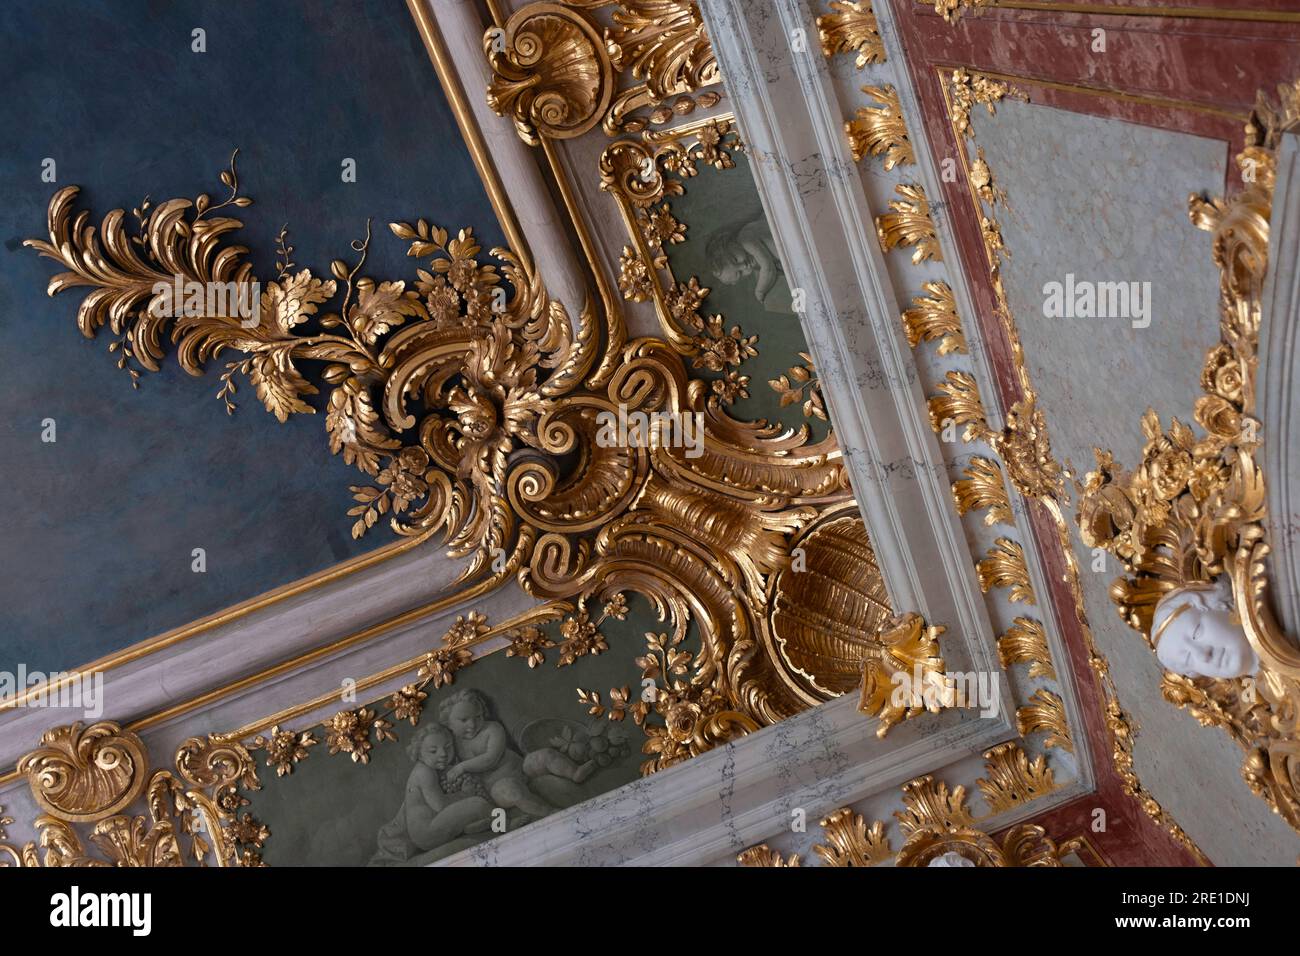 Rundāle intérieur du palais. Détail des ornements richement décorés dans la salle d'or, salle du trône du duc. Décorations en stuc Banque D'Images